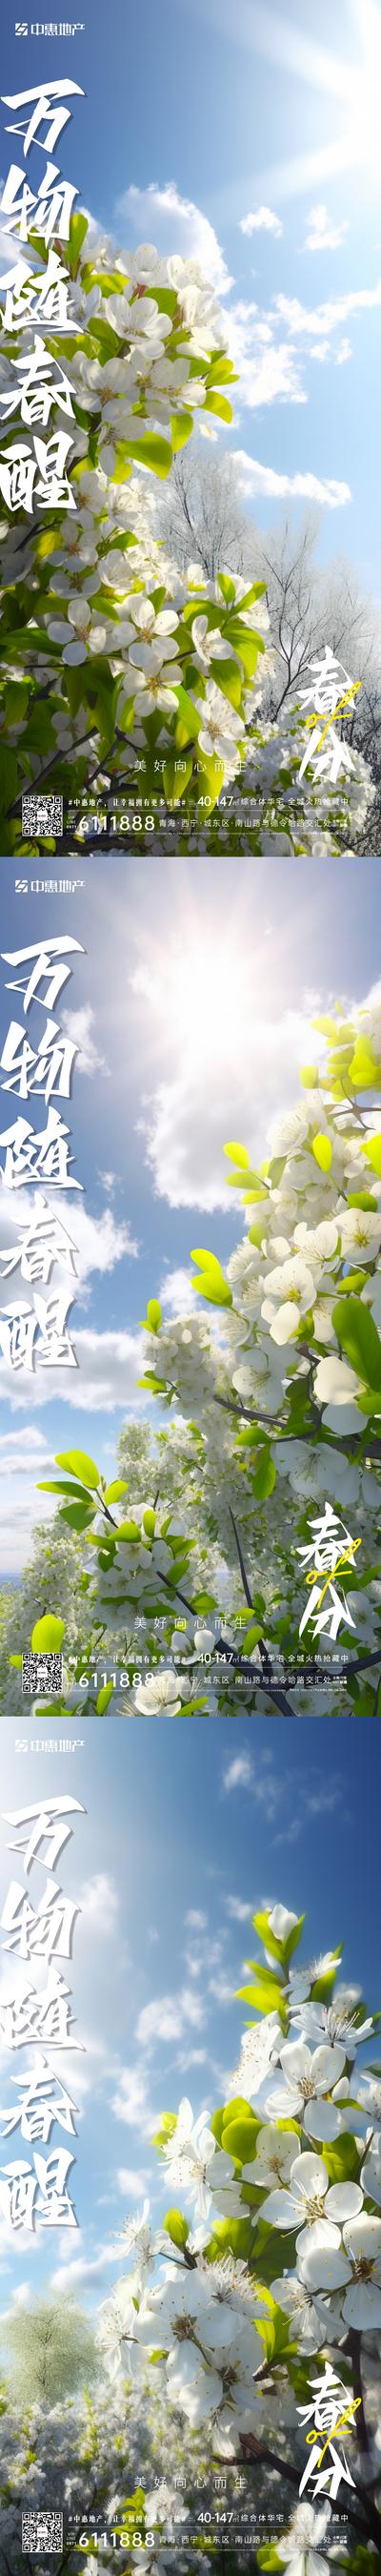 【南门网】广告 海报 节气 春分 春天 阳光 希望 植物